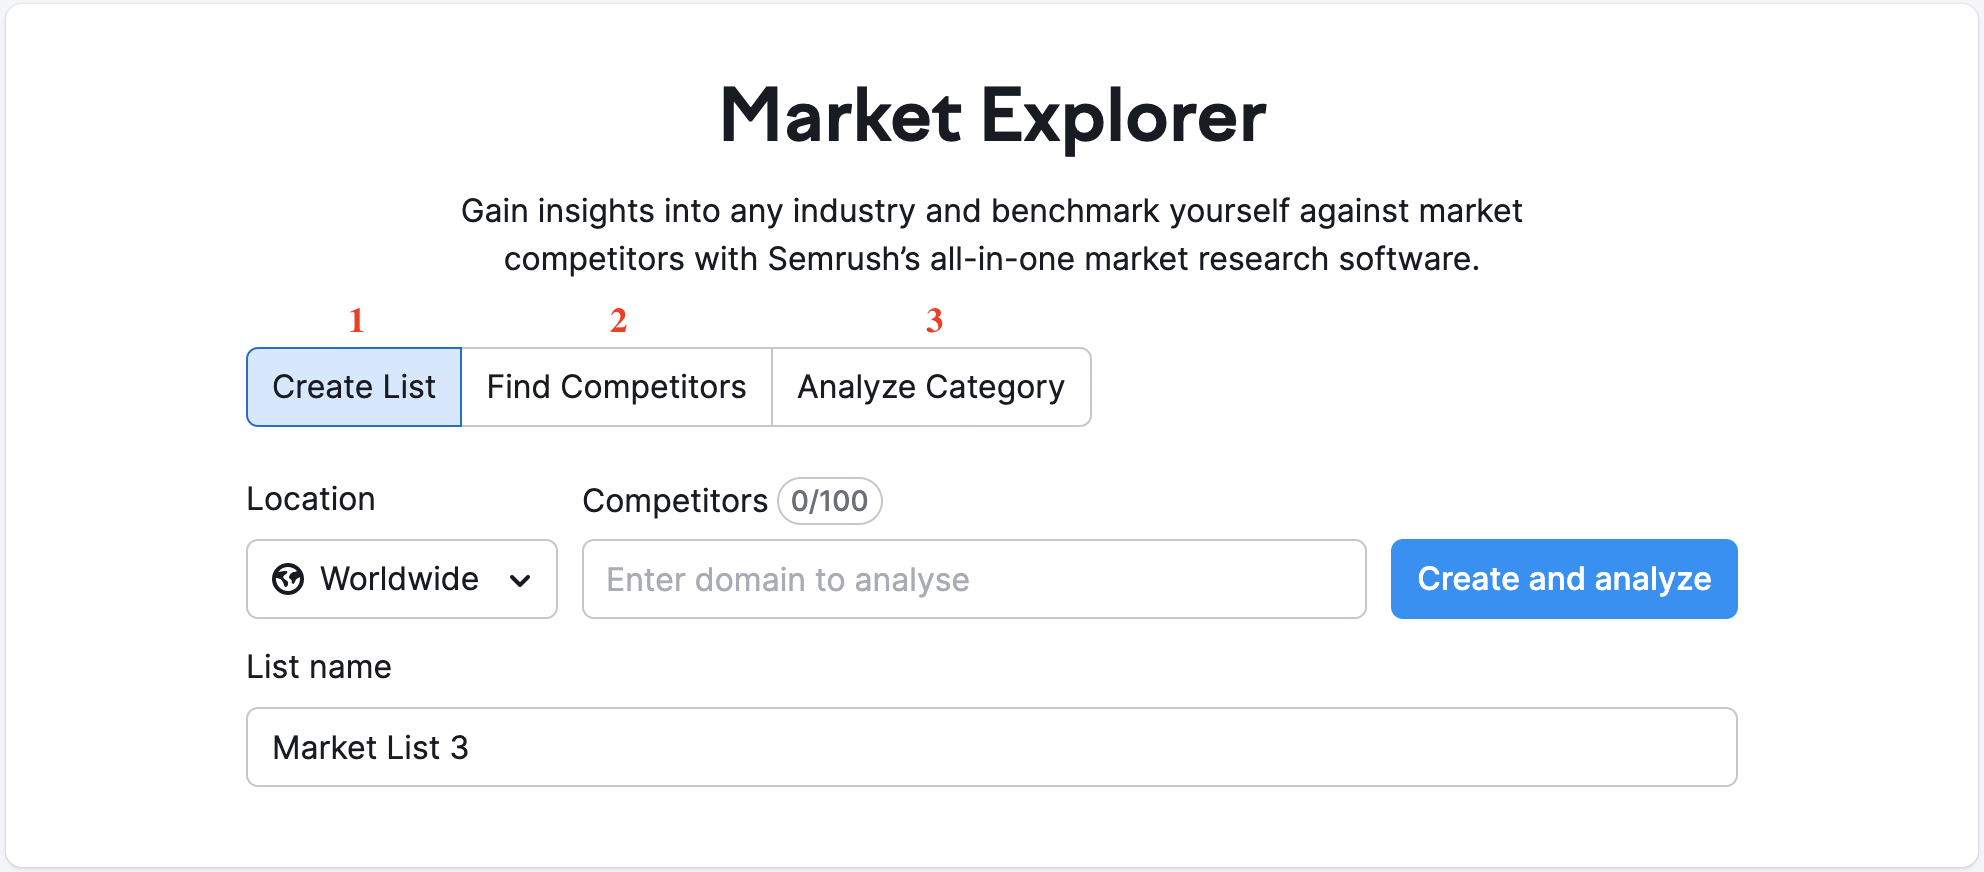 Landing-Page für Market Explorer mit drei verfügbaren Optionen, die mit roten Zahlen markiert sind: 1 – Liste erstellen, 2 – Mitbewerber finden, 3 – Kategorie analysieren.